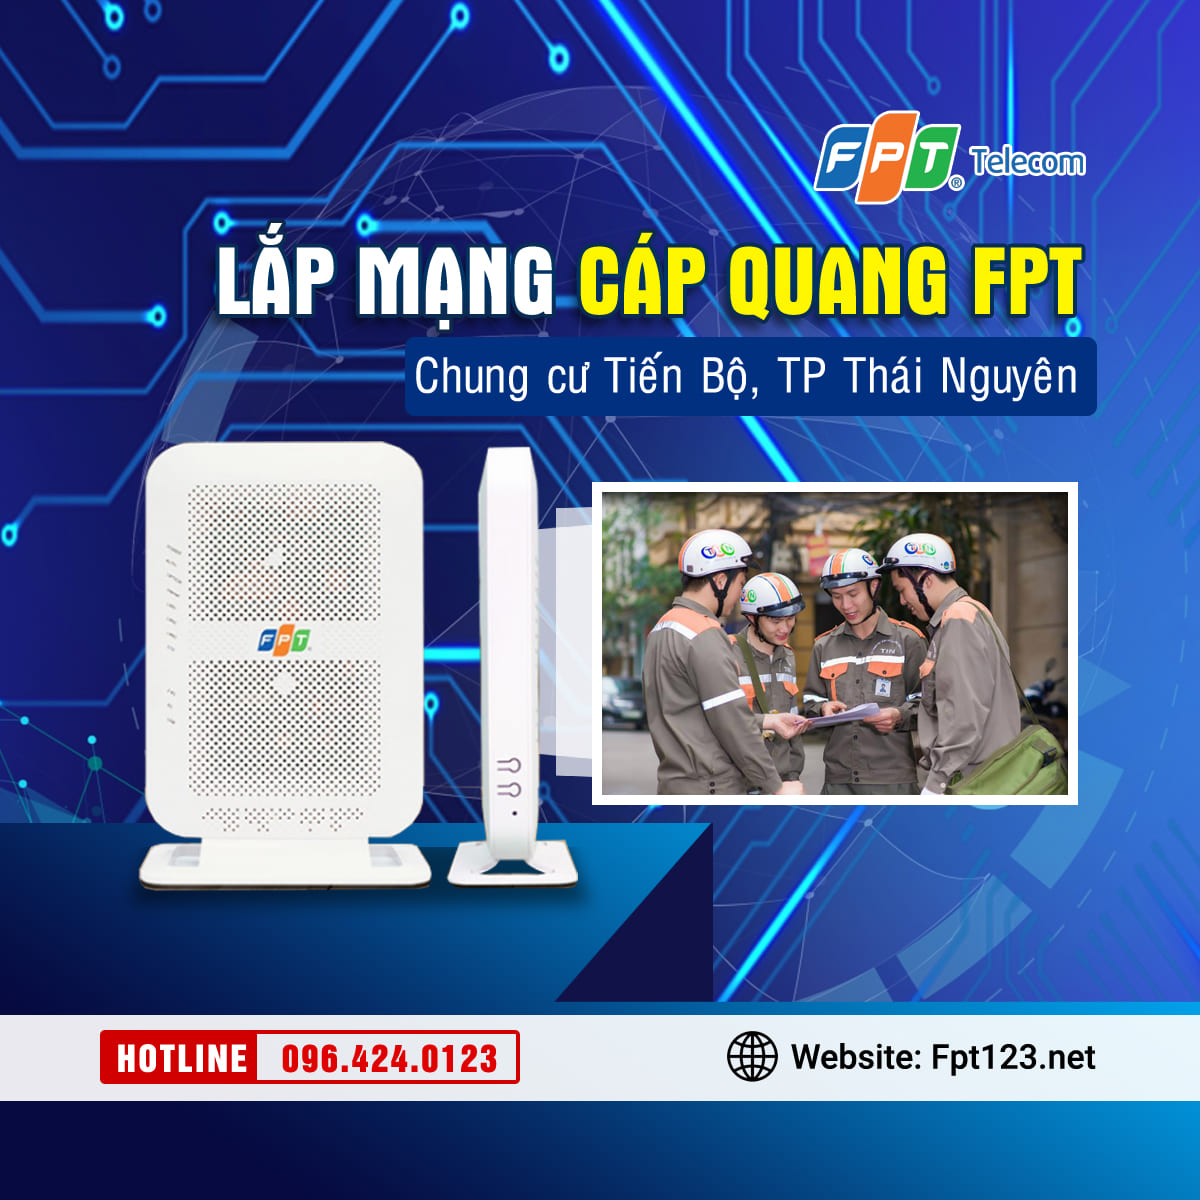 Lắp mạng cáp quang FPT chung cư Tiến Bộ, TP Thái Nguyên